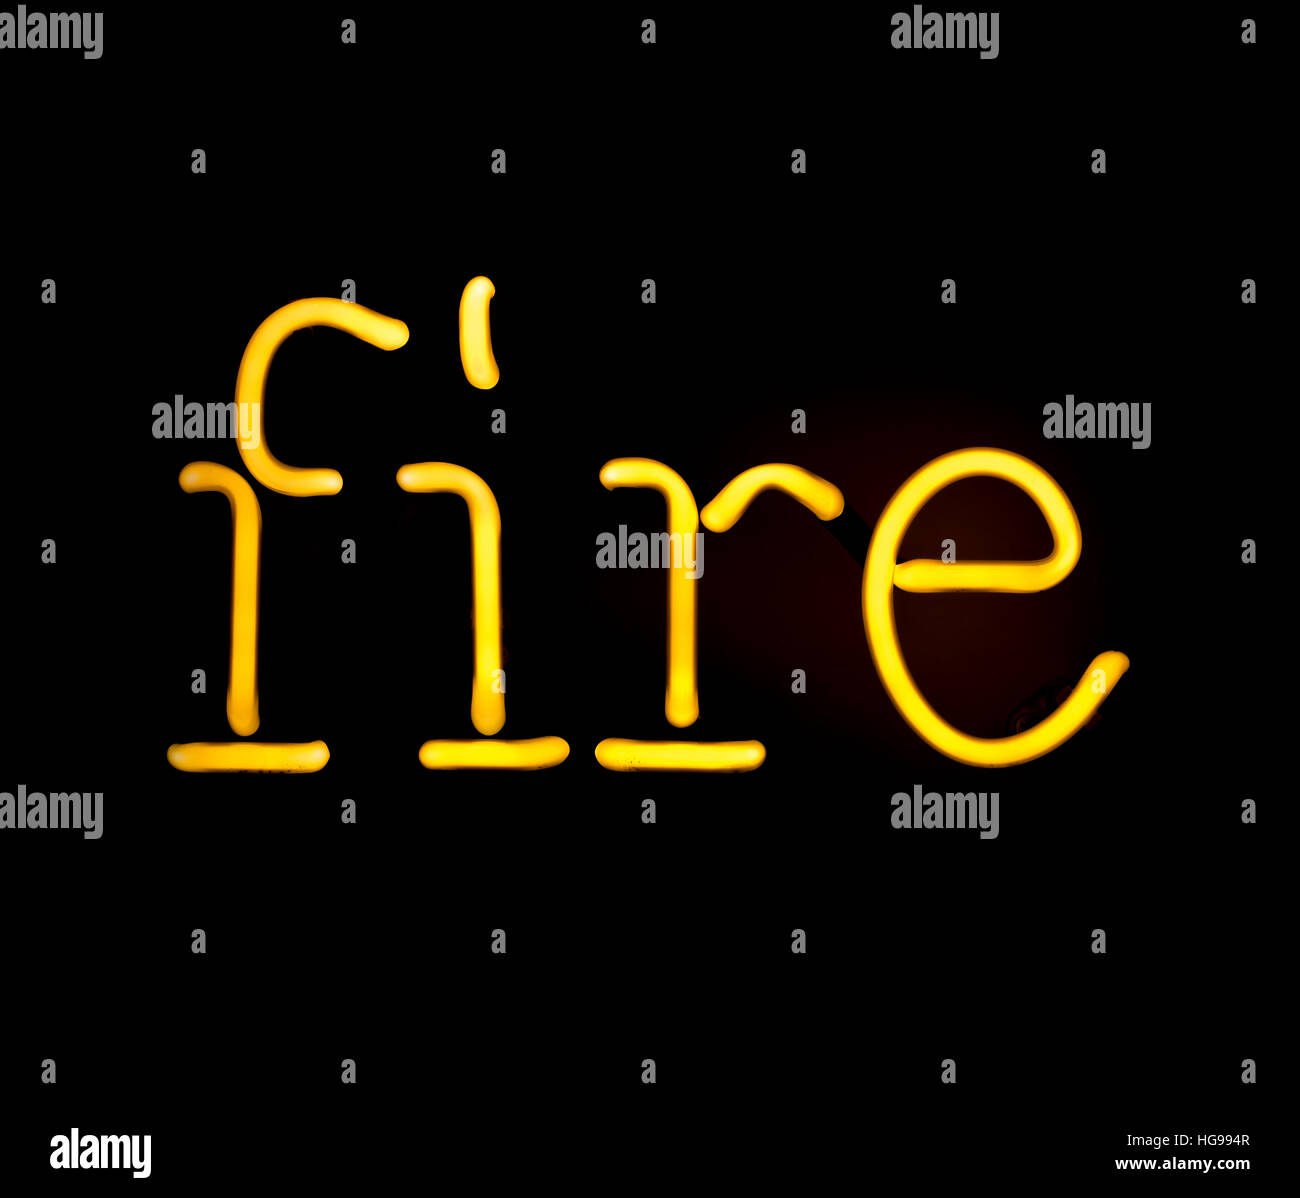 La palabra fuego escrito en luz de neón Foto de stock